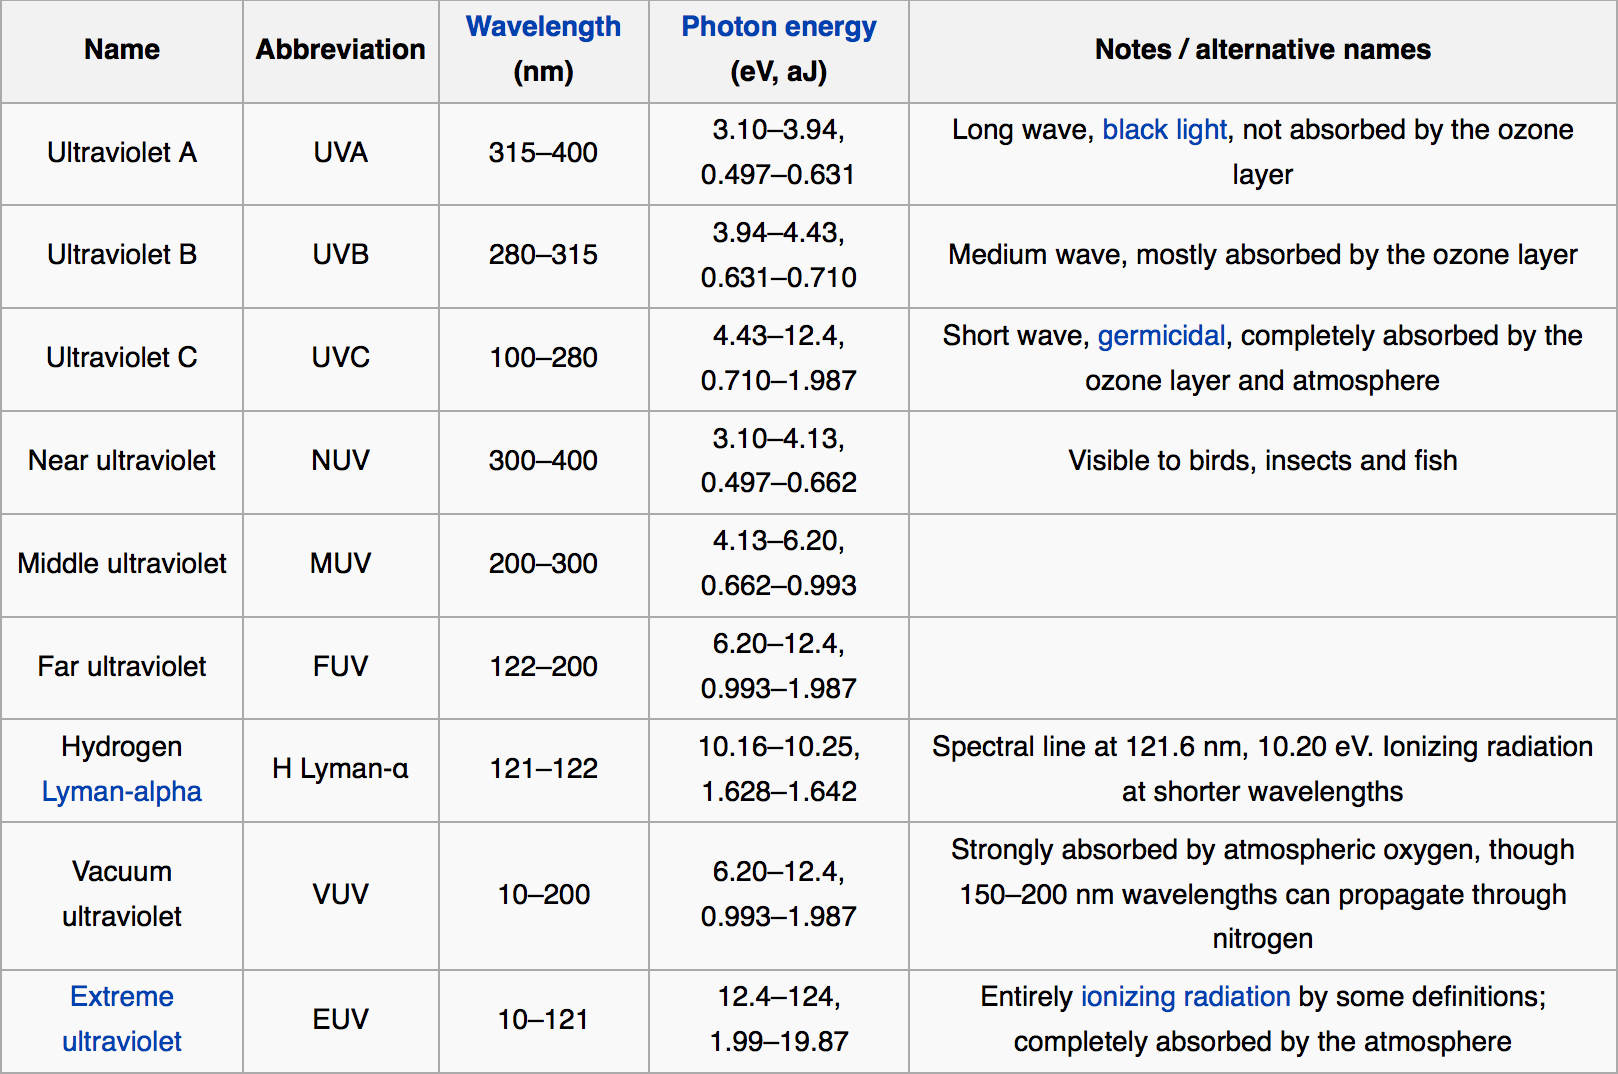 Subtypes of ultraviolet radiation